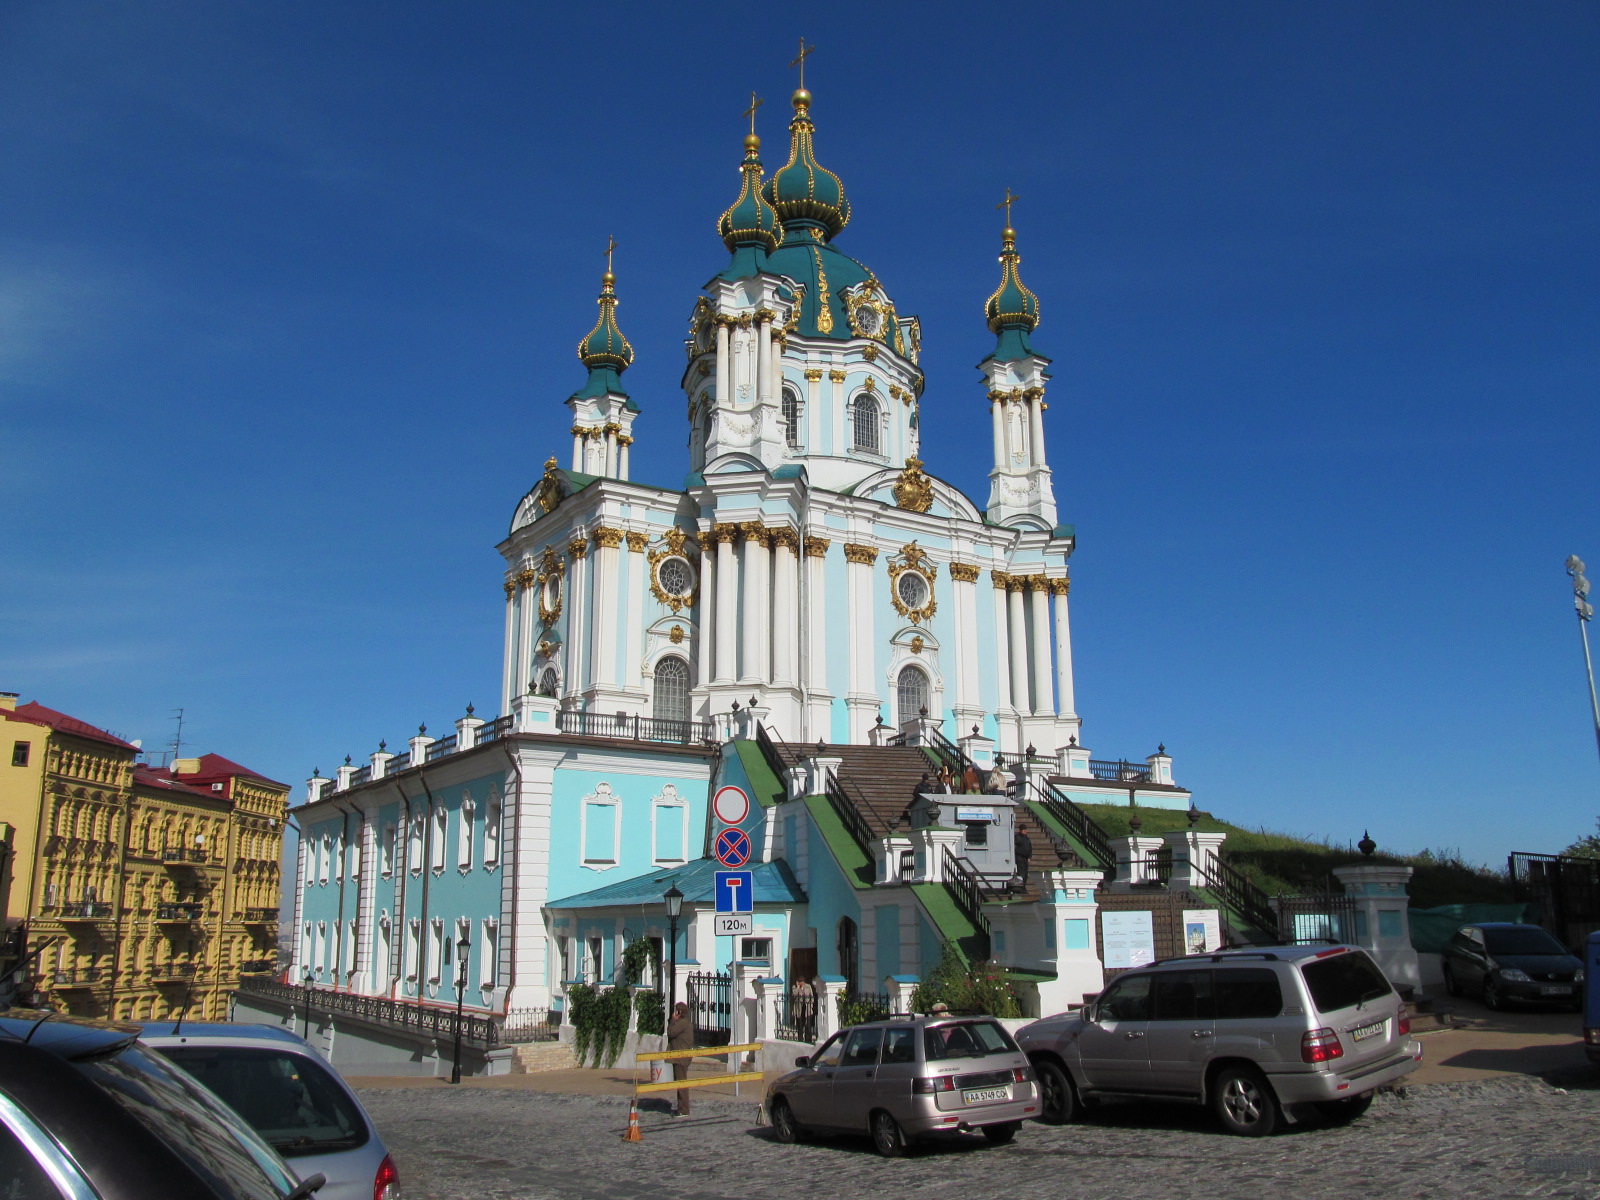 В каком городе можно увидеть церковь изображенную на фотографии